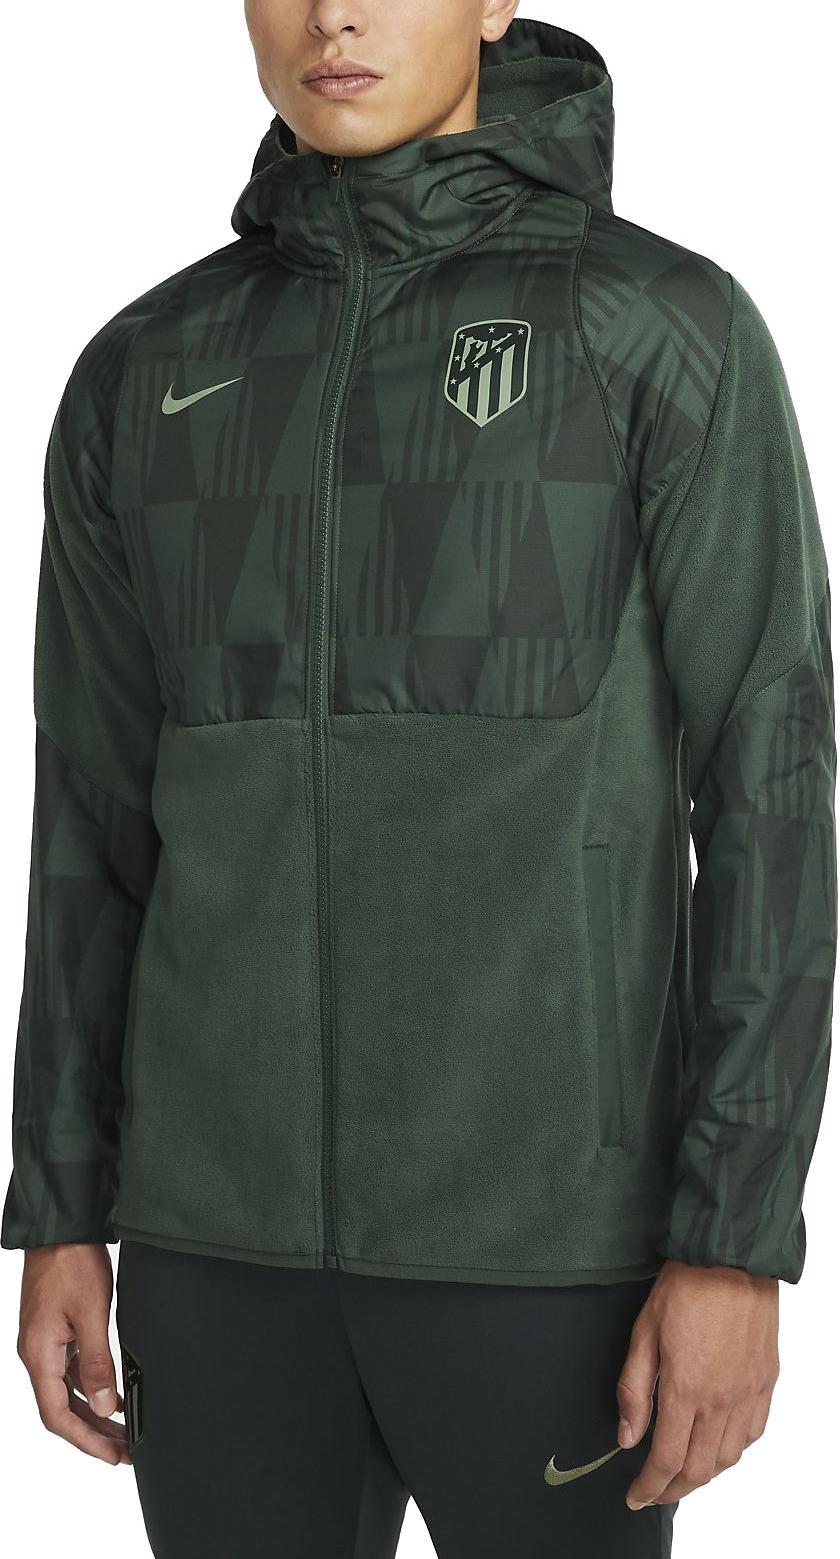 Τζάκετ με κουκούλα Nike Atlético Madrid AWF Men's Hooded Woven Football Jacket